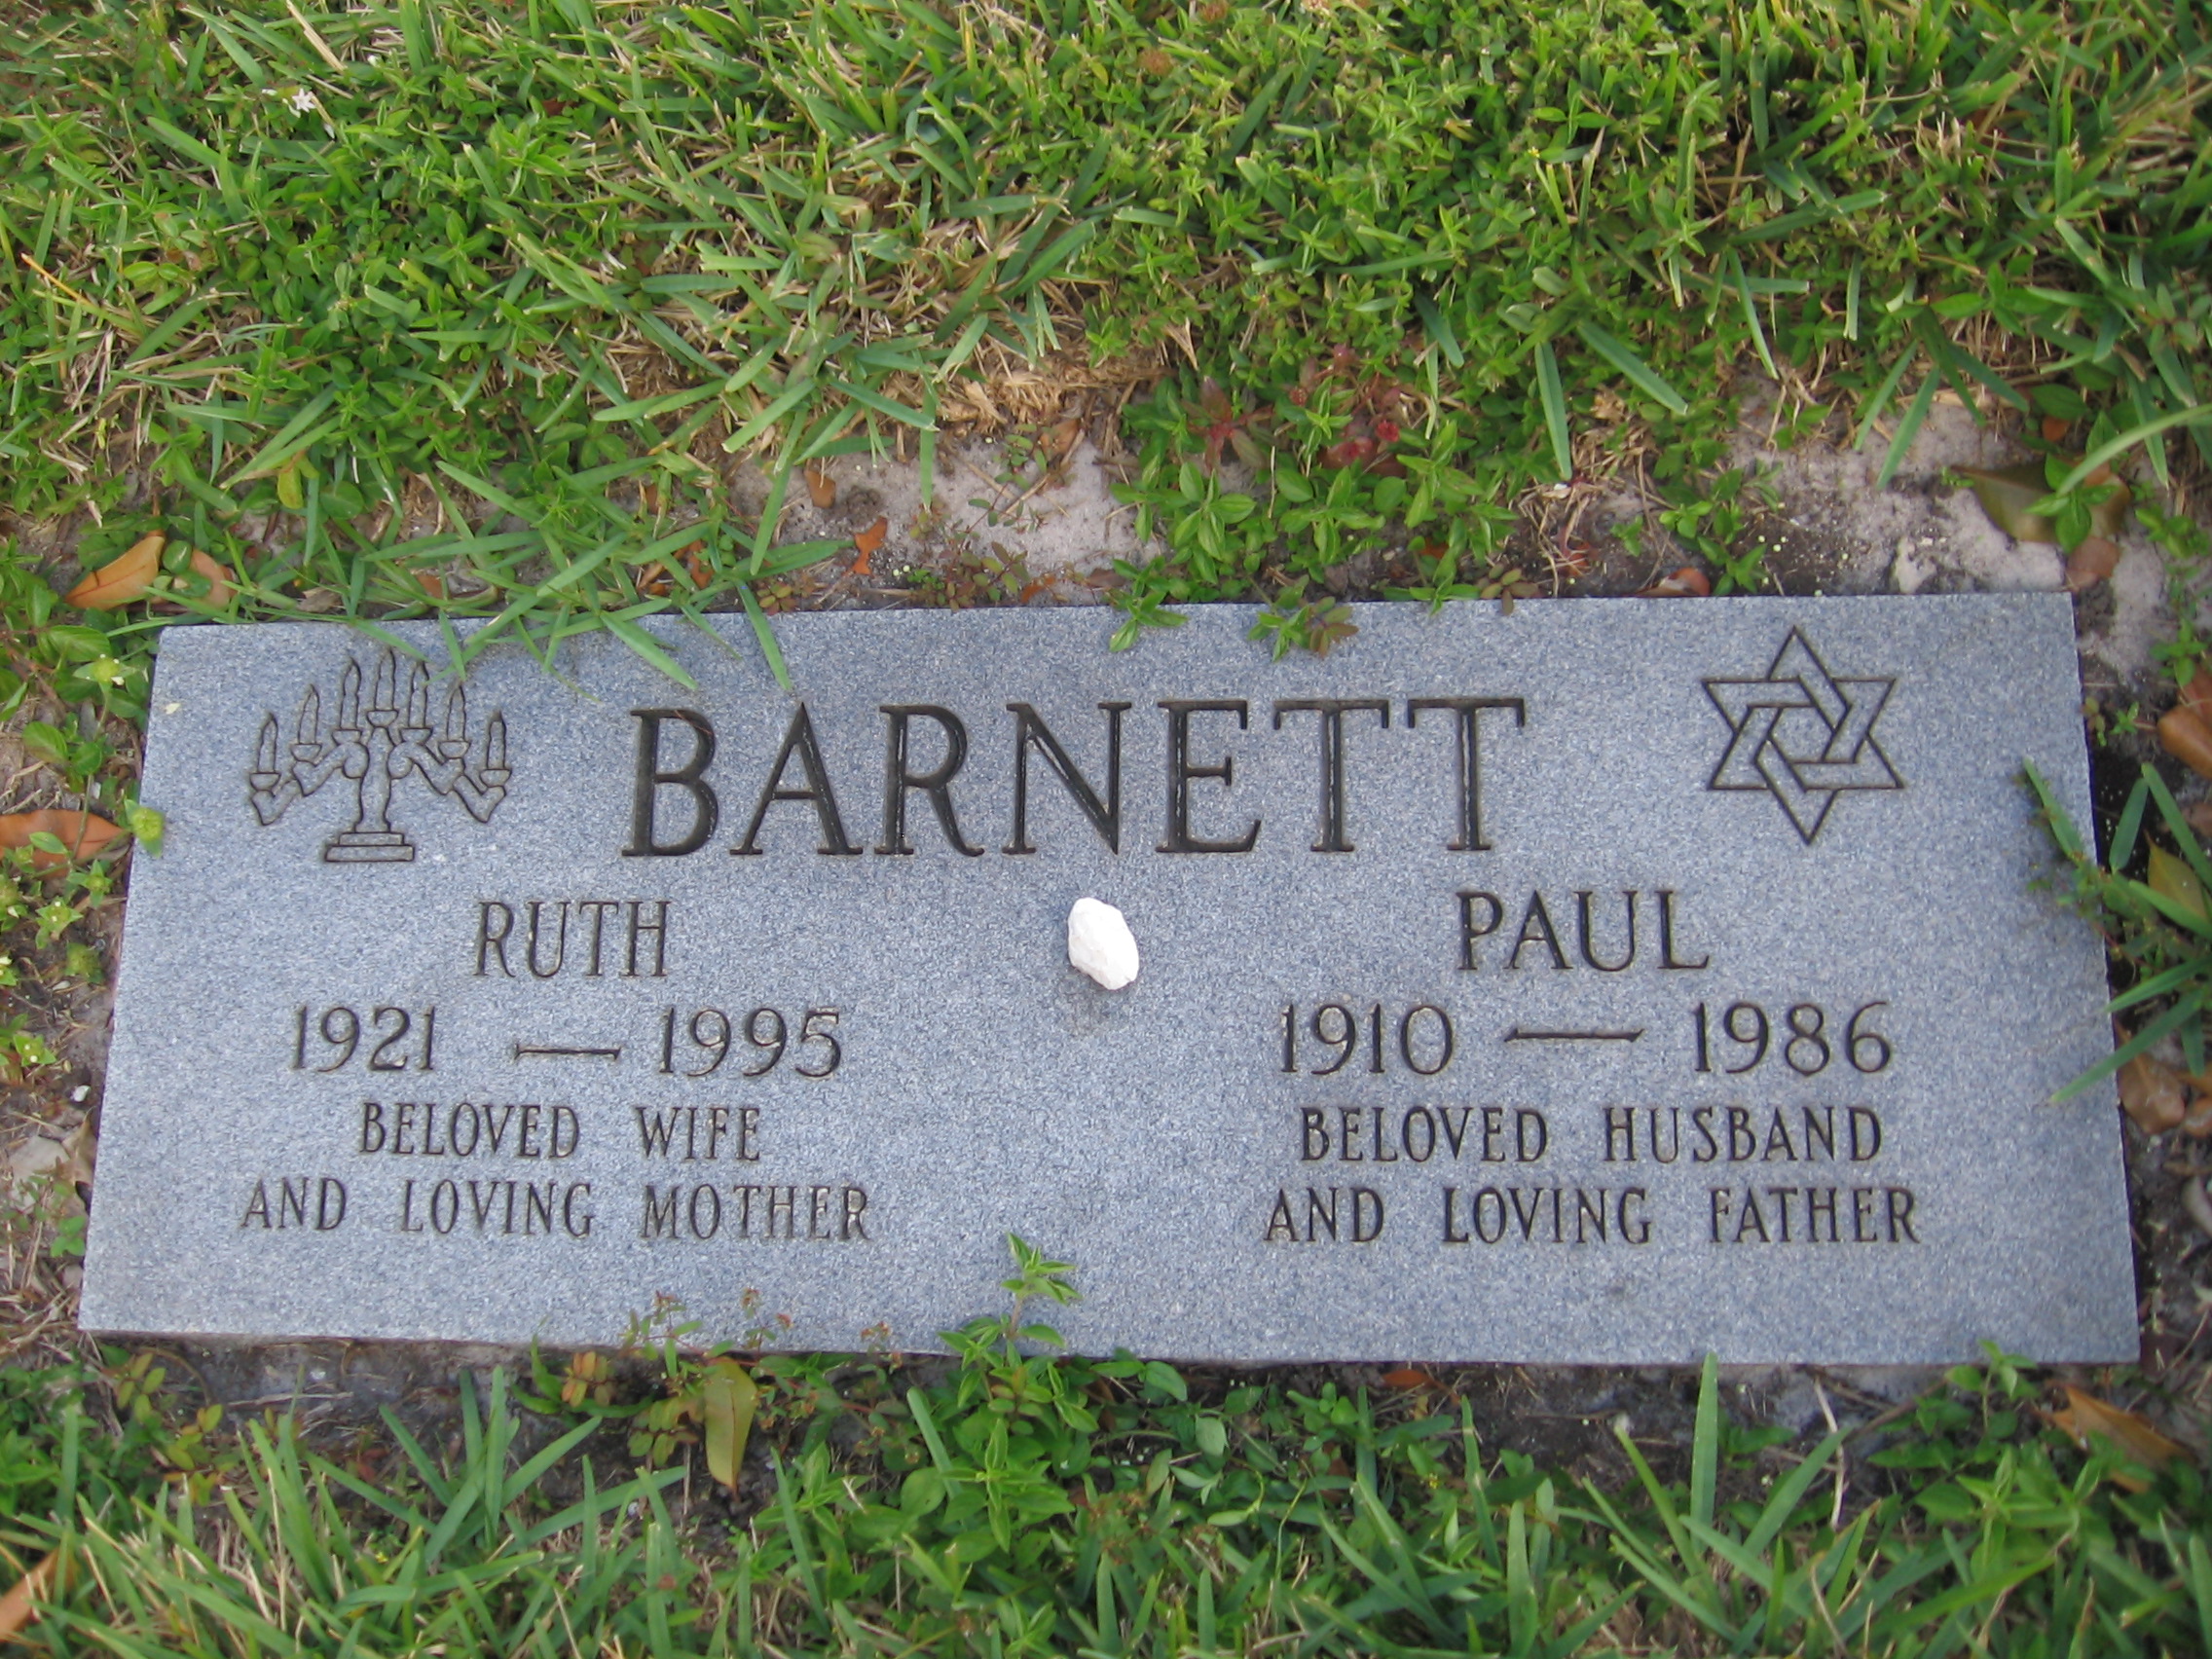 Paul Barnett